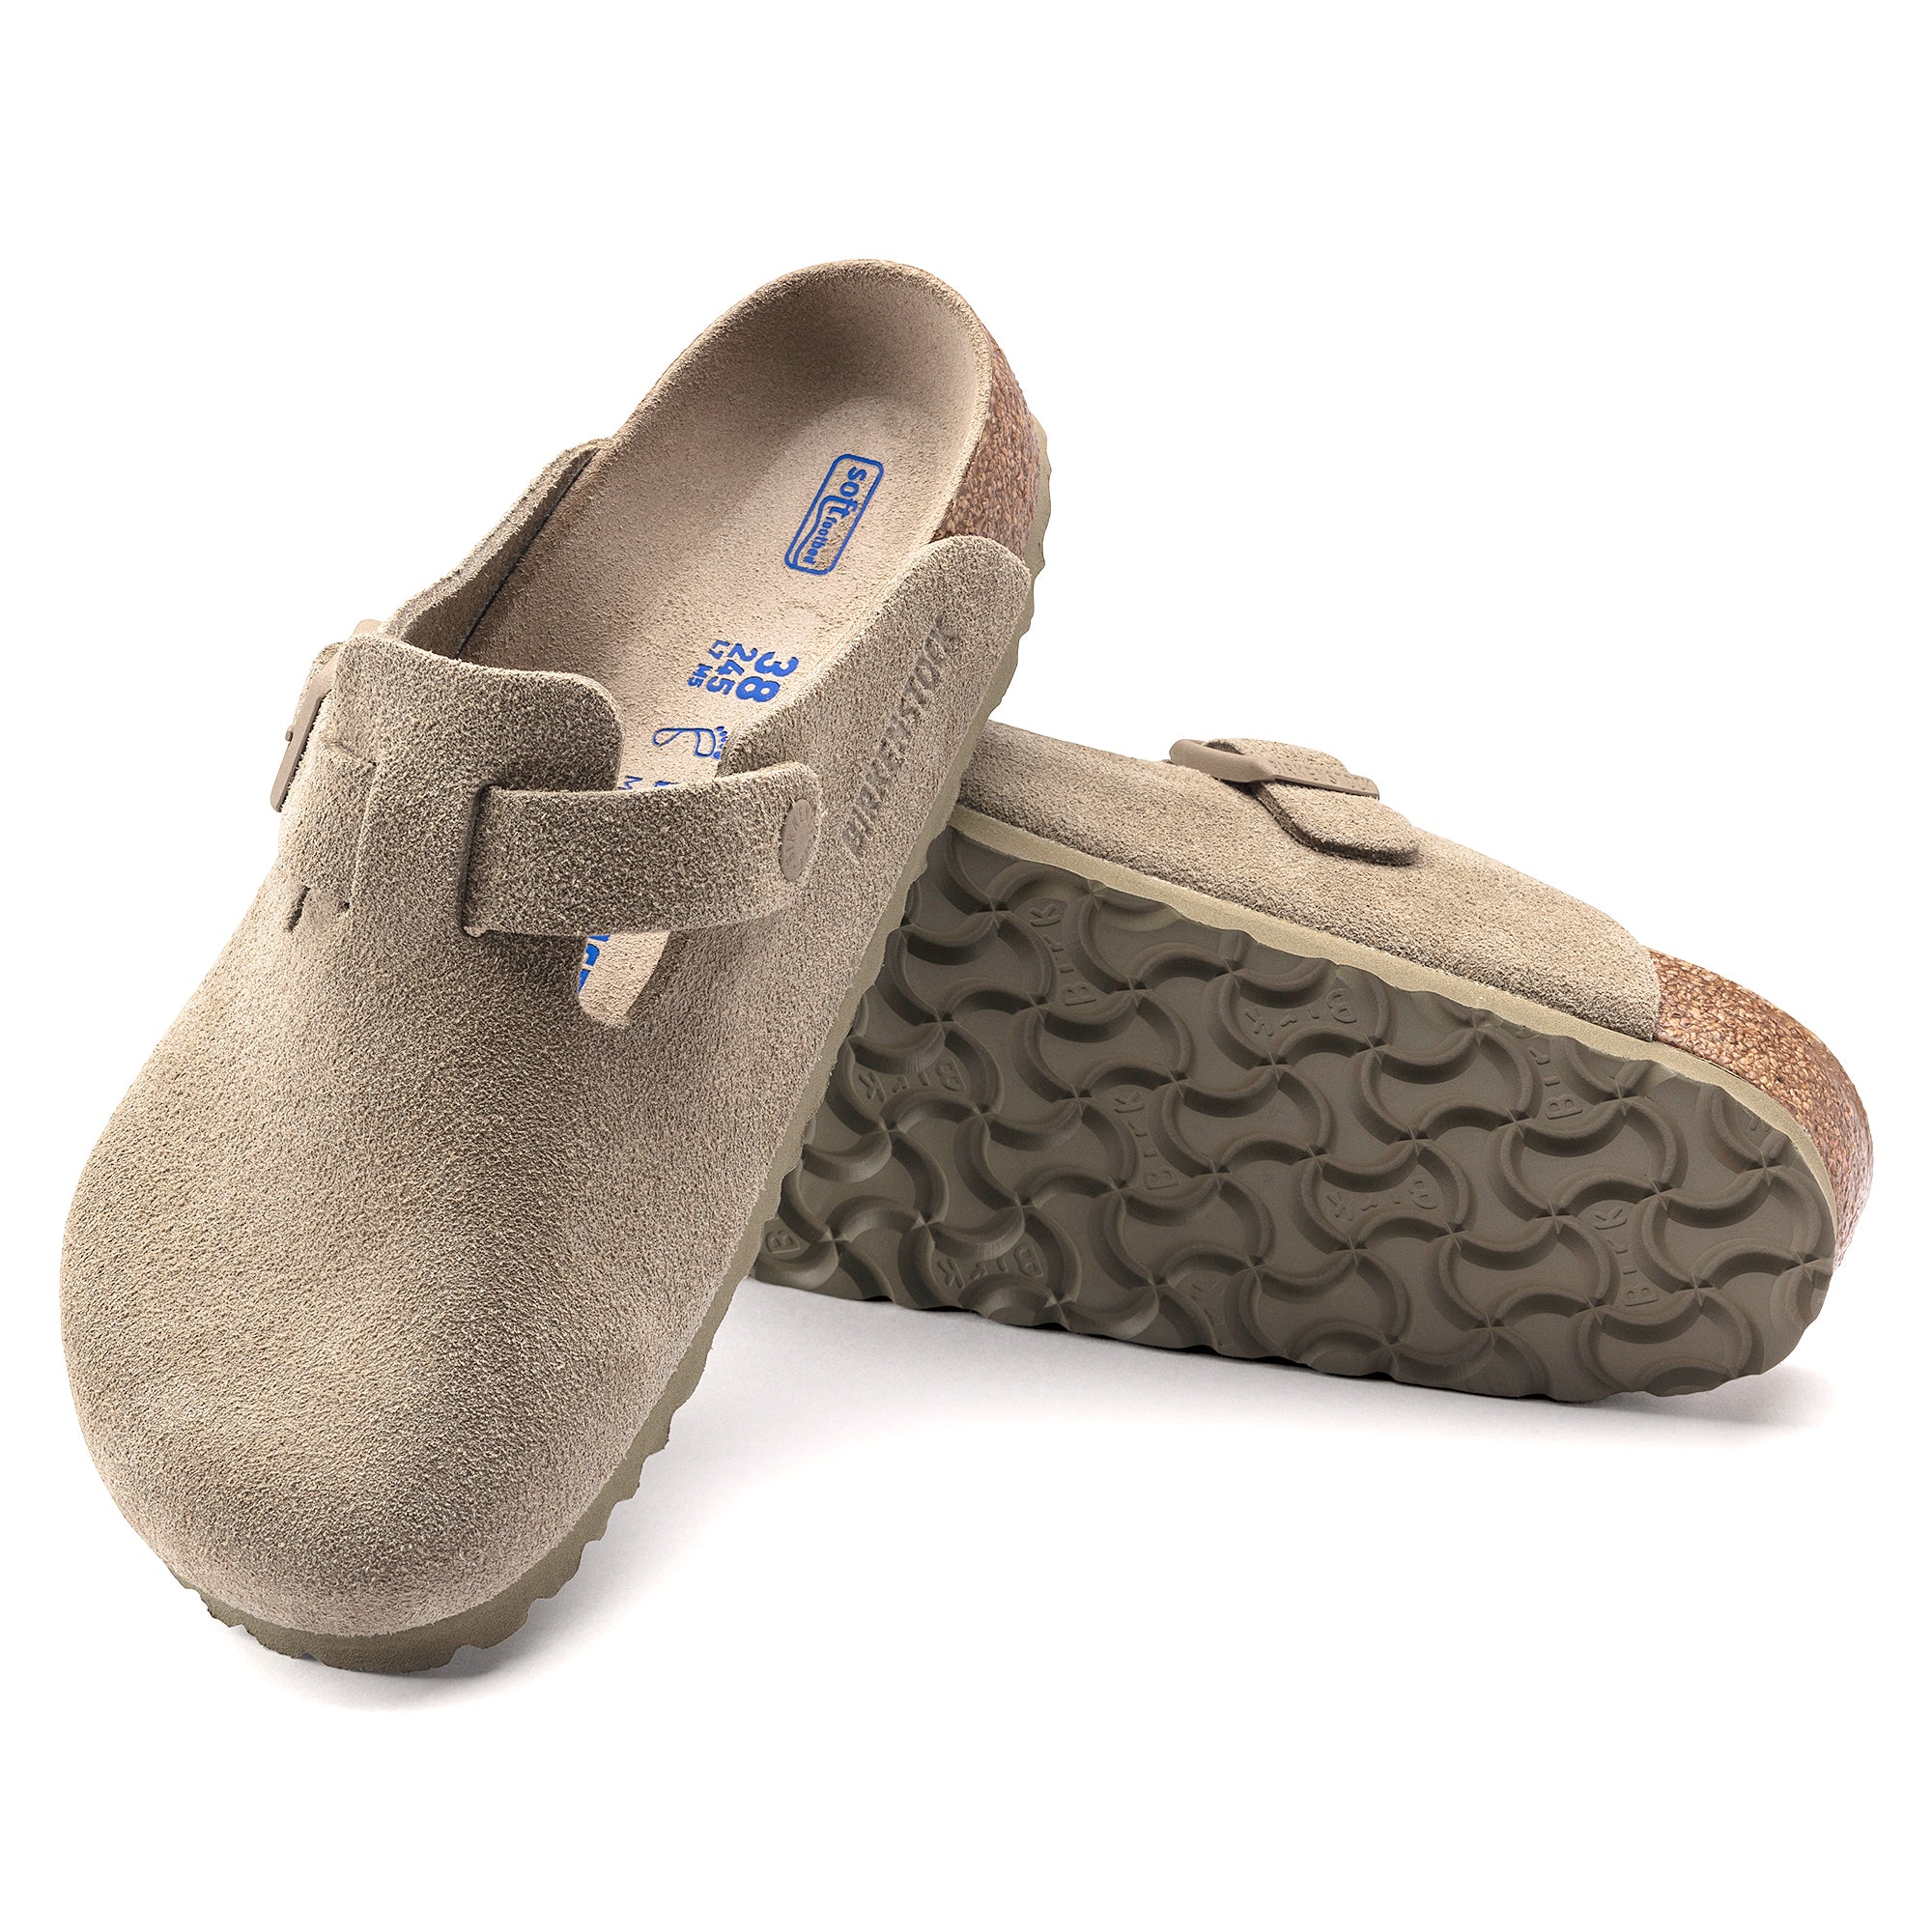 Birkenstock Boston SFB Sandals - Faded Khaki Suede